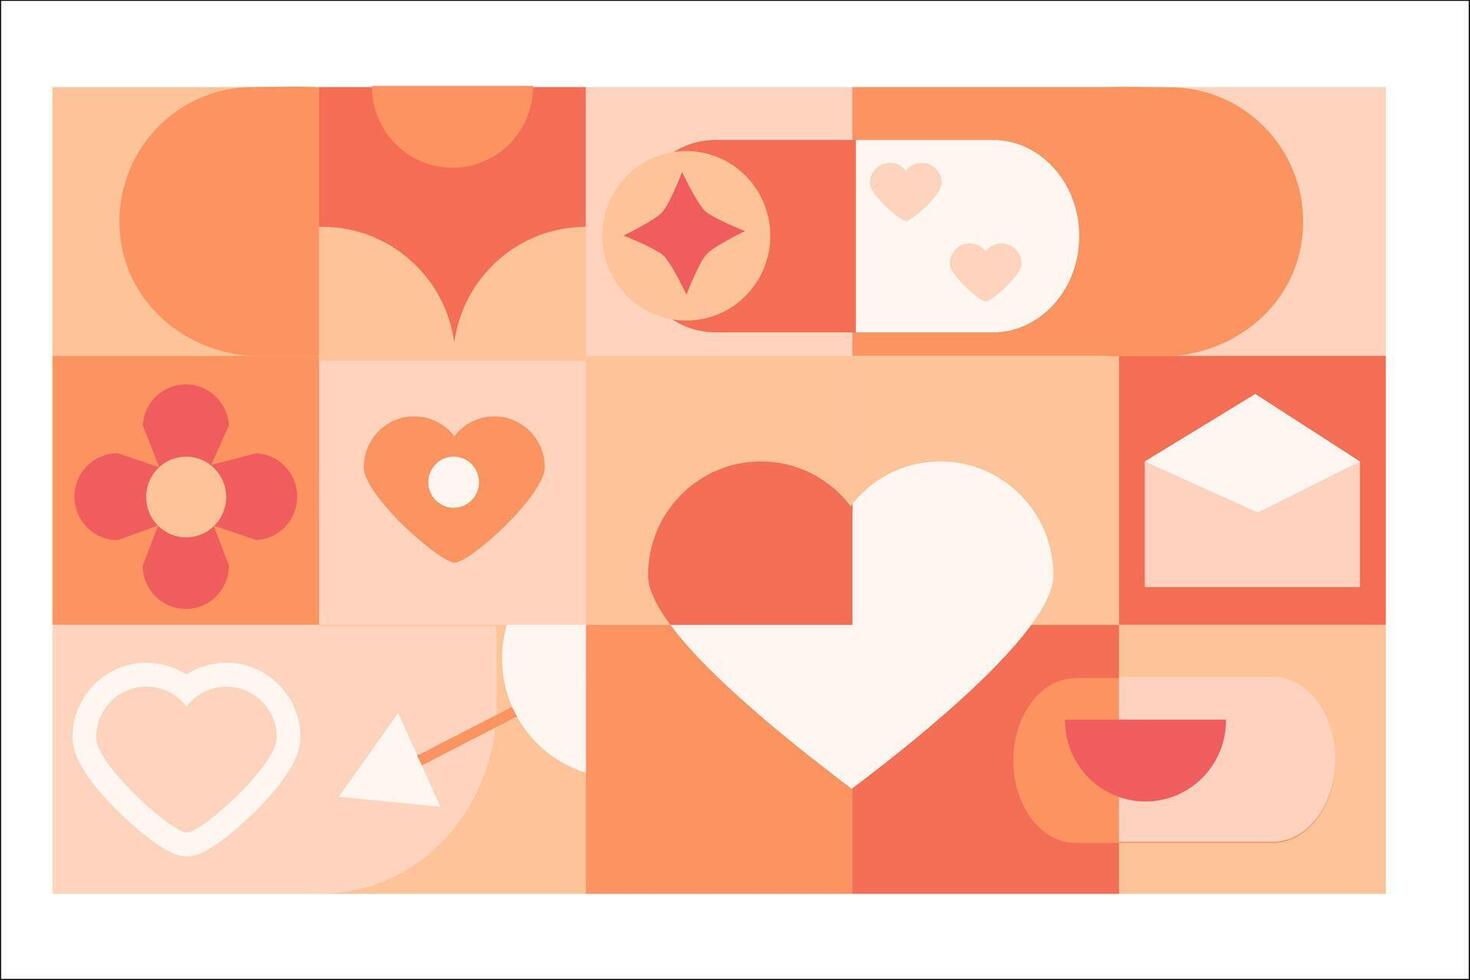 geometrie abstract patroon met hart - liefde kaart. vector illustratie kan gebruikt voor valentijnsdag dag, liefde dag, bruiloft ontwerp. bloem, mail, harten, boog, glimlach - romantisch ontwerp in perzik en roze kleuren